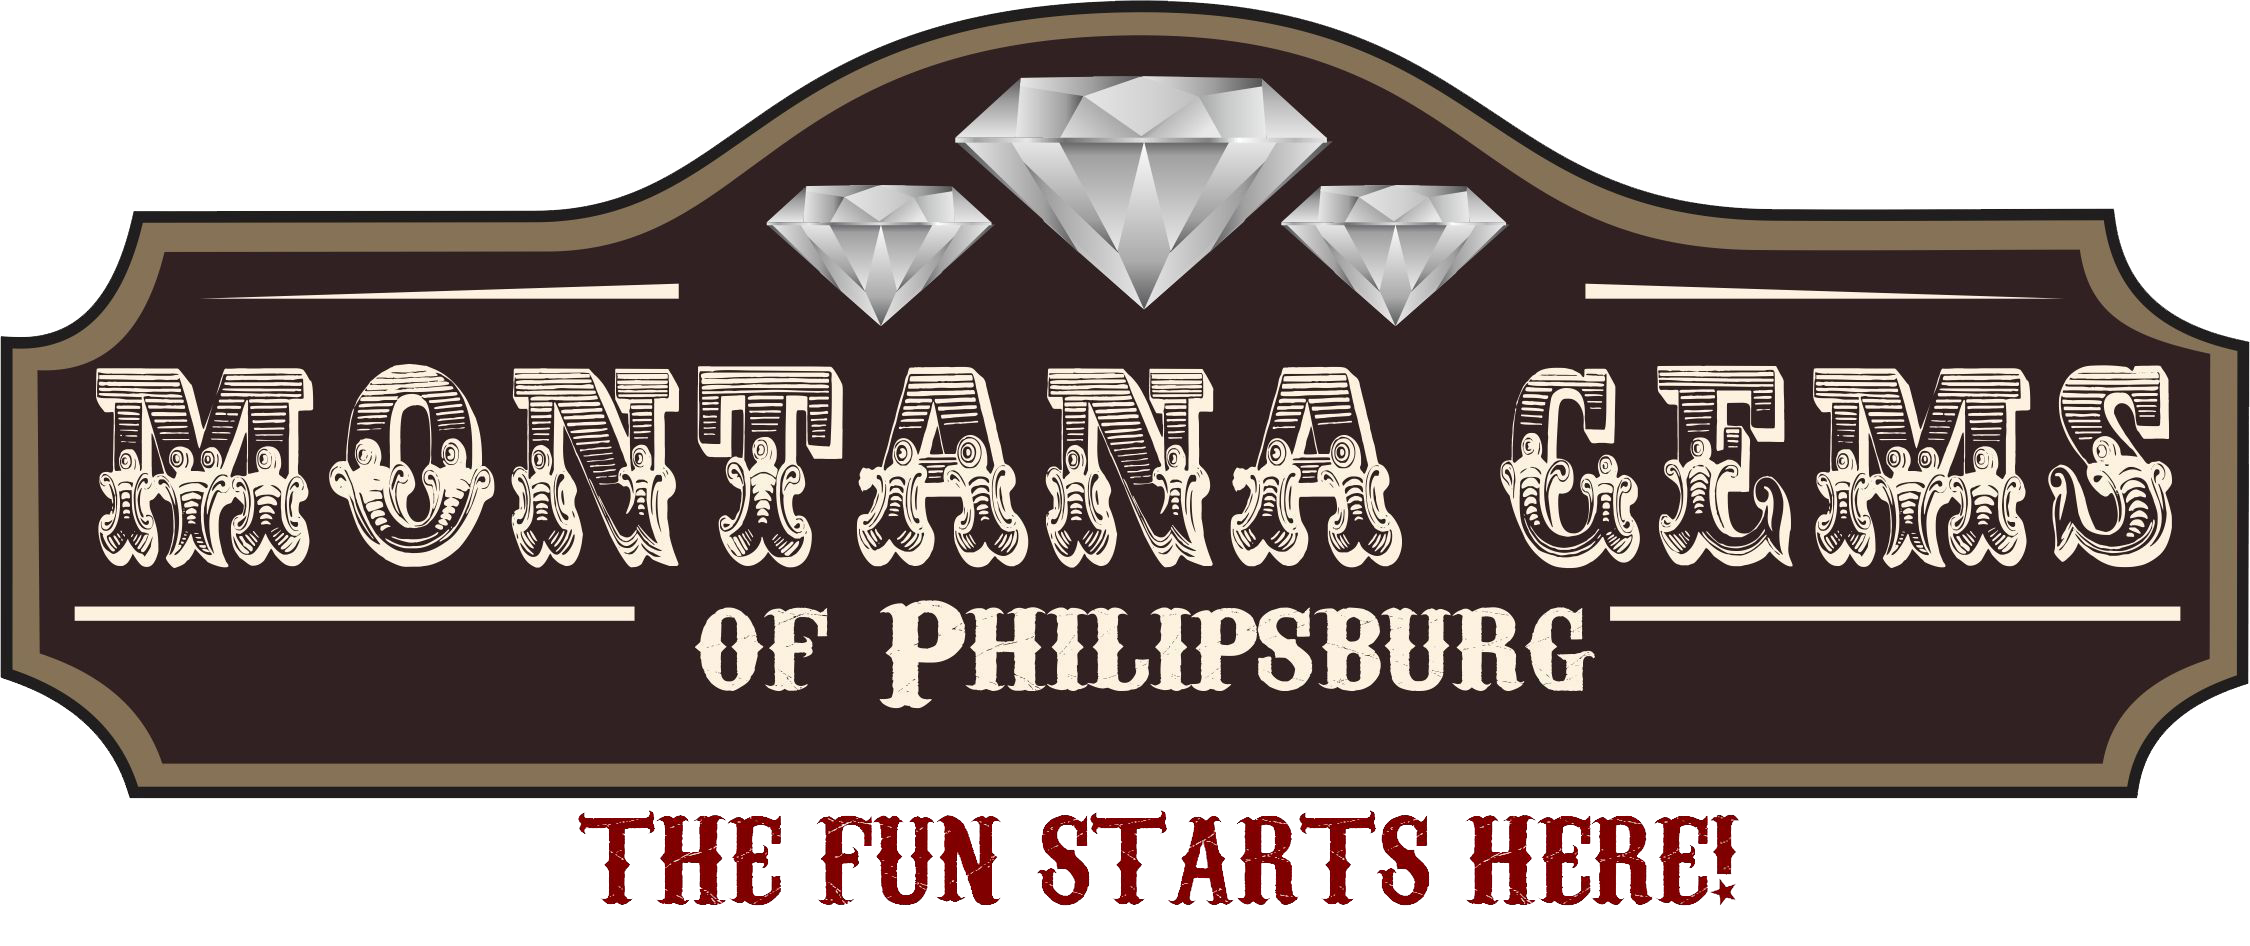 Montana Gems of Philipsburg, Inc. 